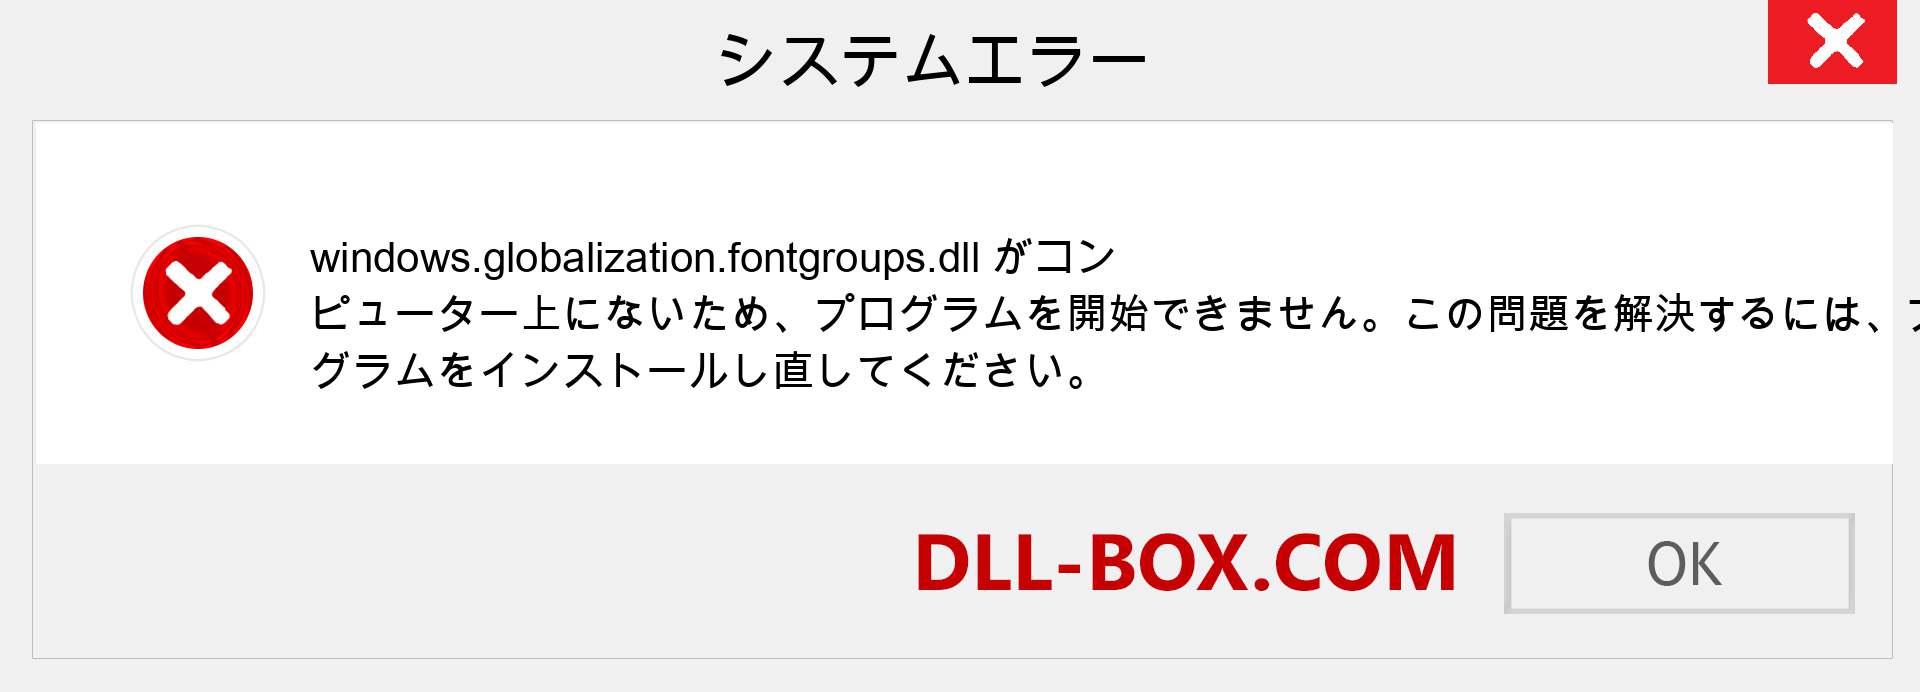 windows.globalization.fontgroups.dllファイルがありませんか？ Windows 7、8、10用にダウンロード-Windows、写真、画像でwindows.globalization.fontgroupsdllの欠落エラーを修正